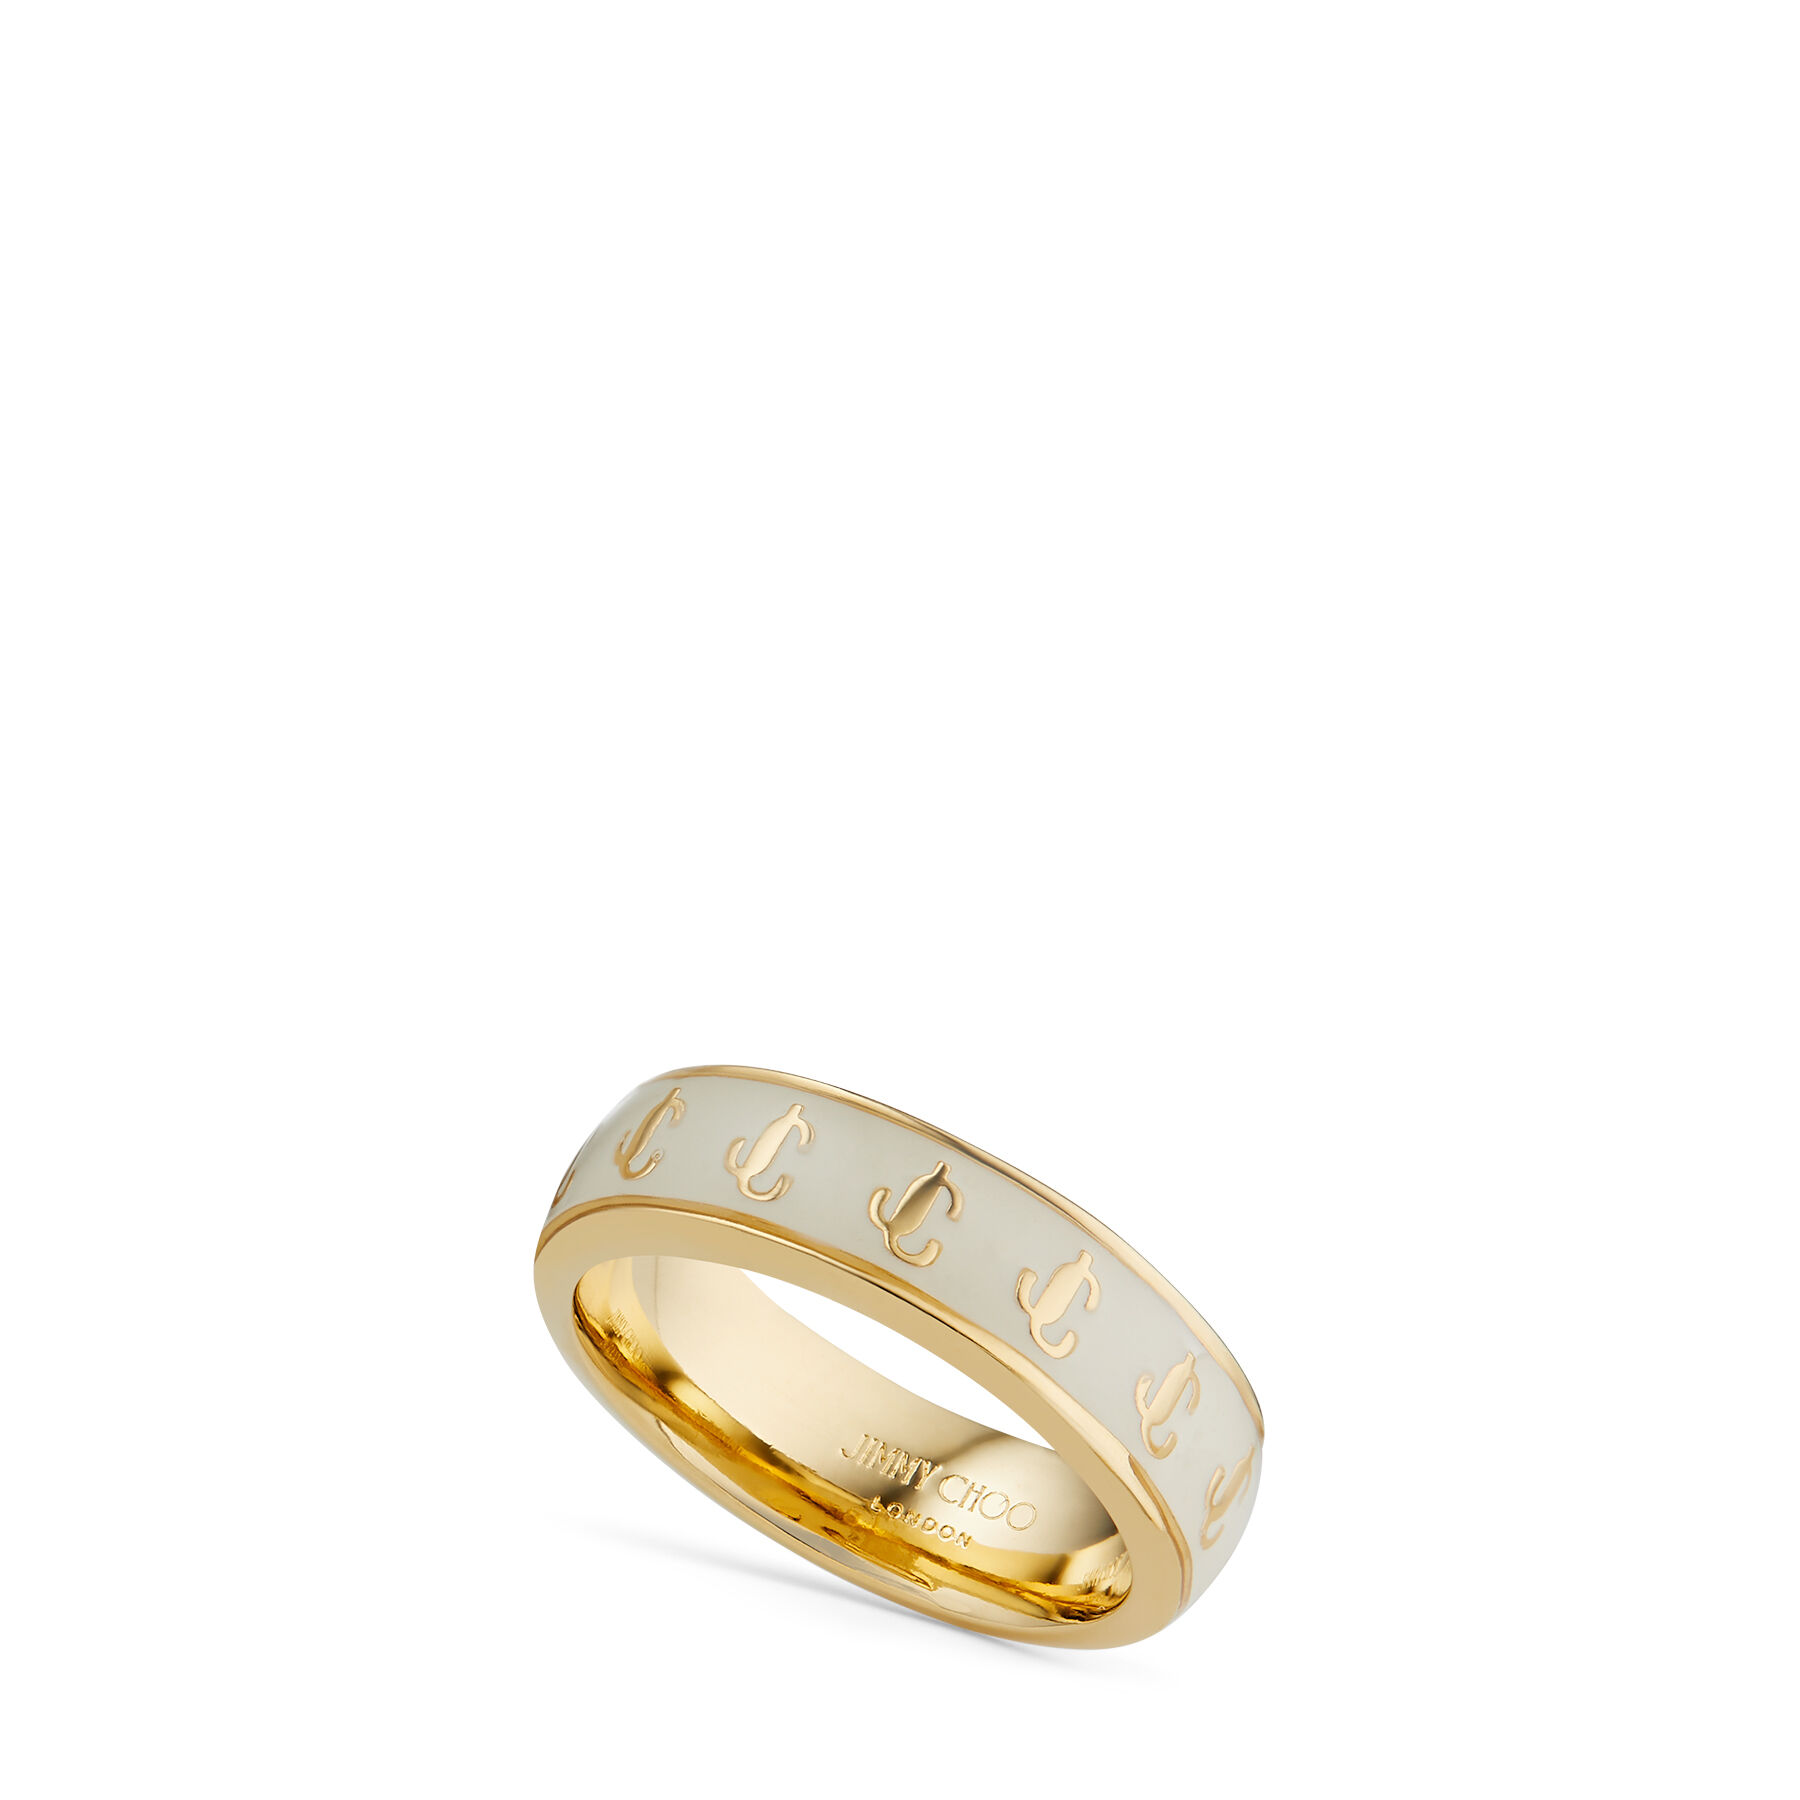 Gold-Finish Metal and Latte Enamel JC Ring | JC Enamel Ring 